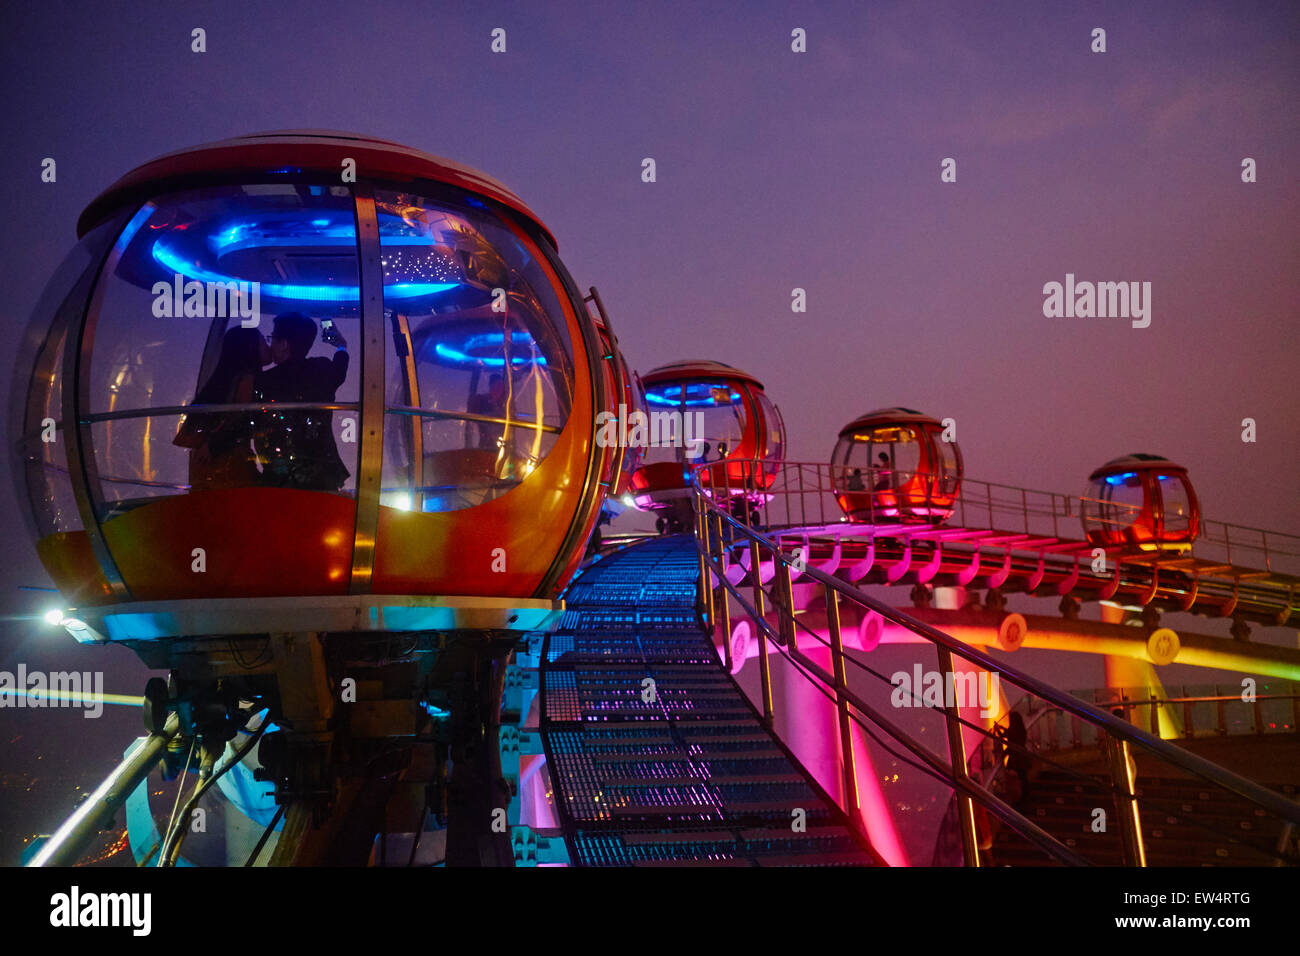 China, Guangdong province, Guangzhou or Canton, Zhujiang new city, TV Tower, Ferris Wheel Stock Photo